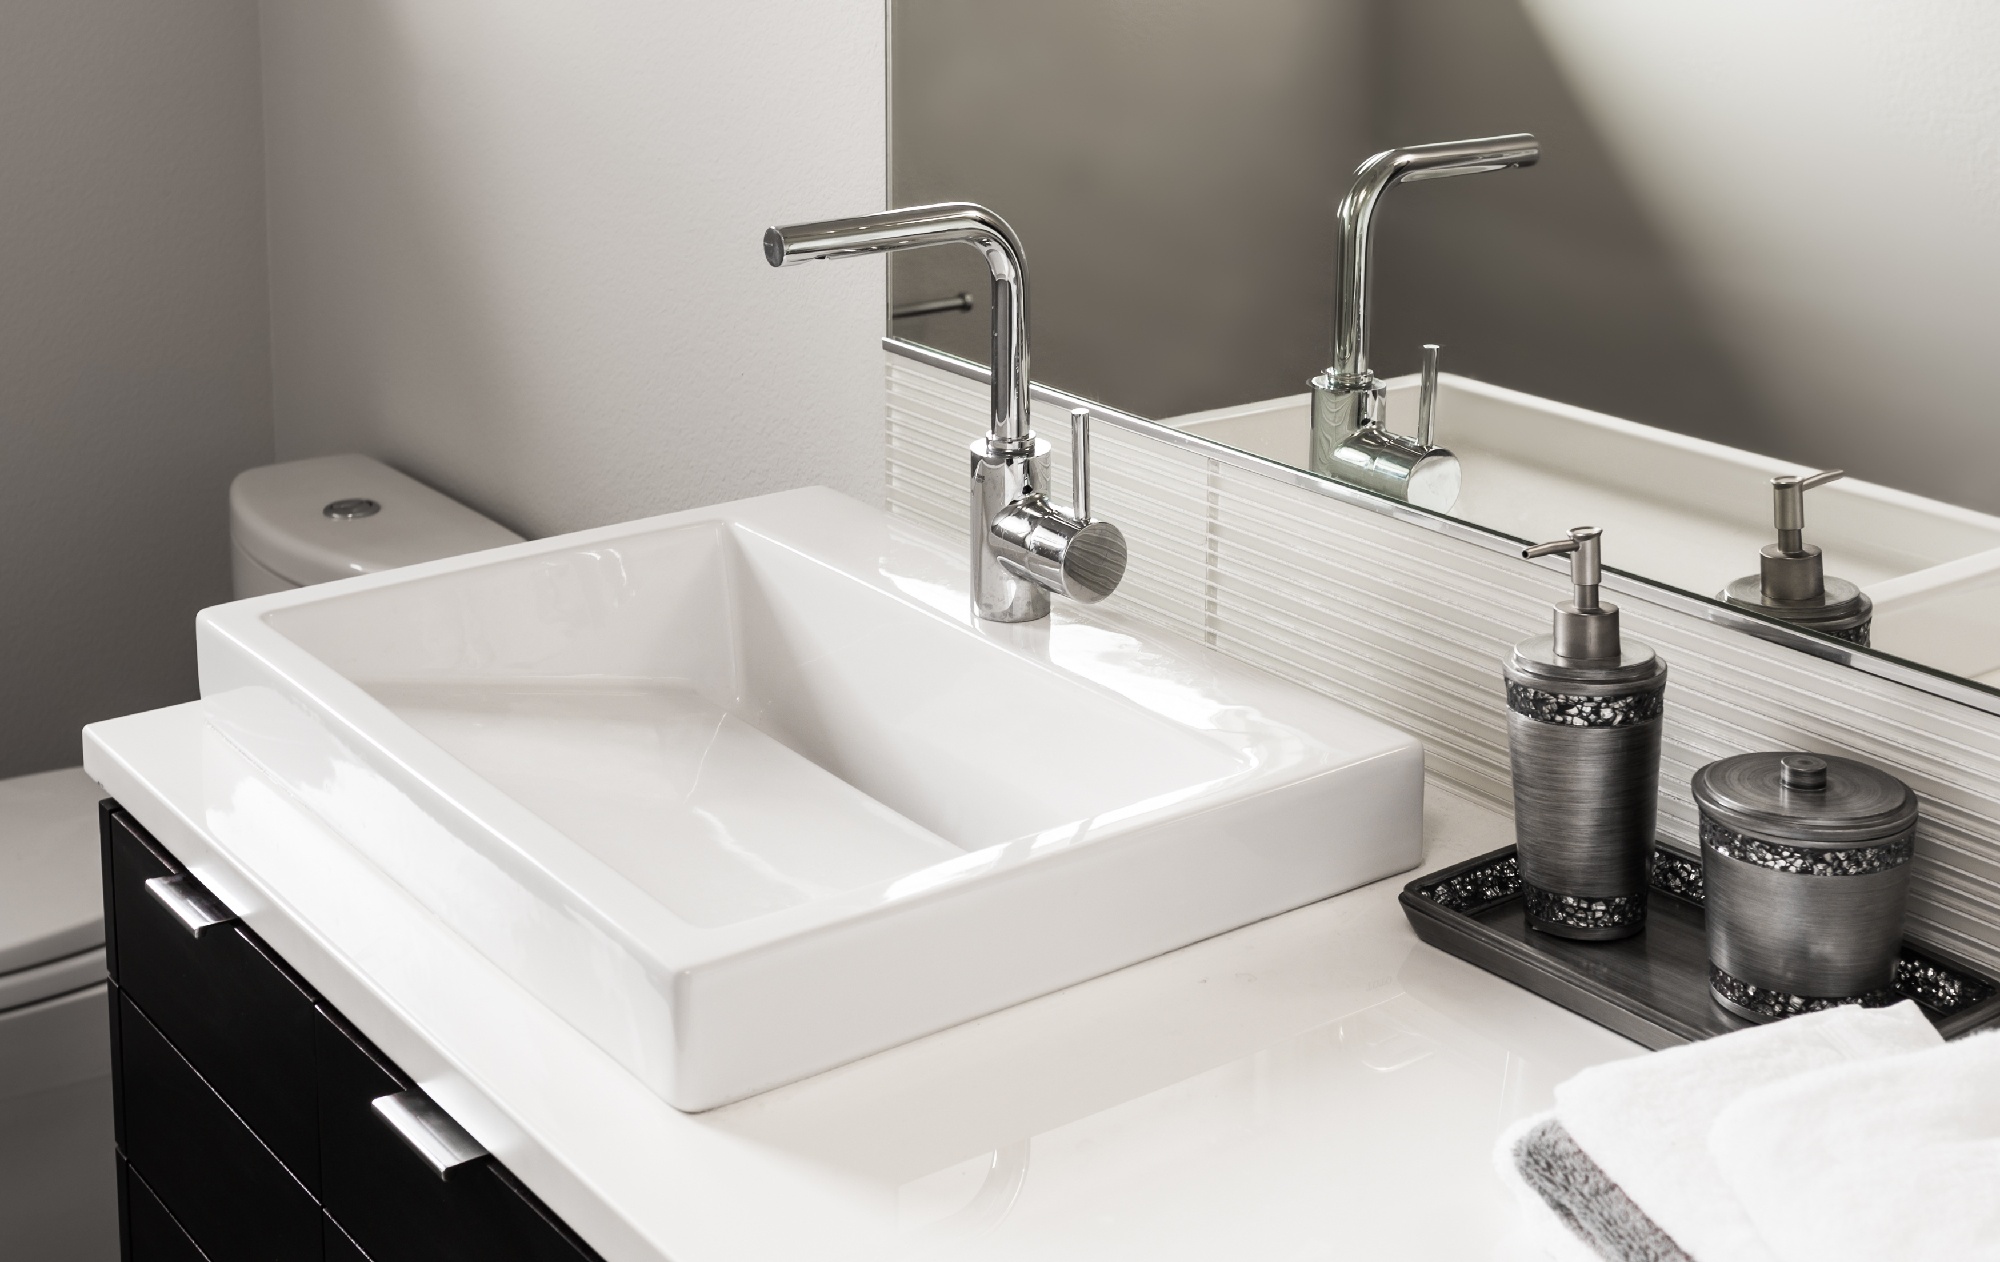 sink design for remodeling bathroom